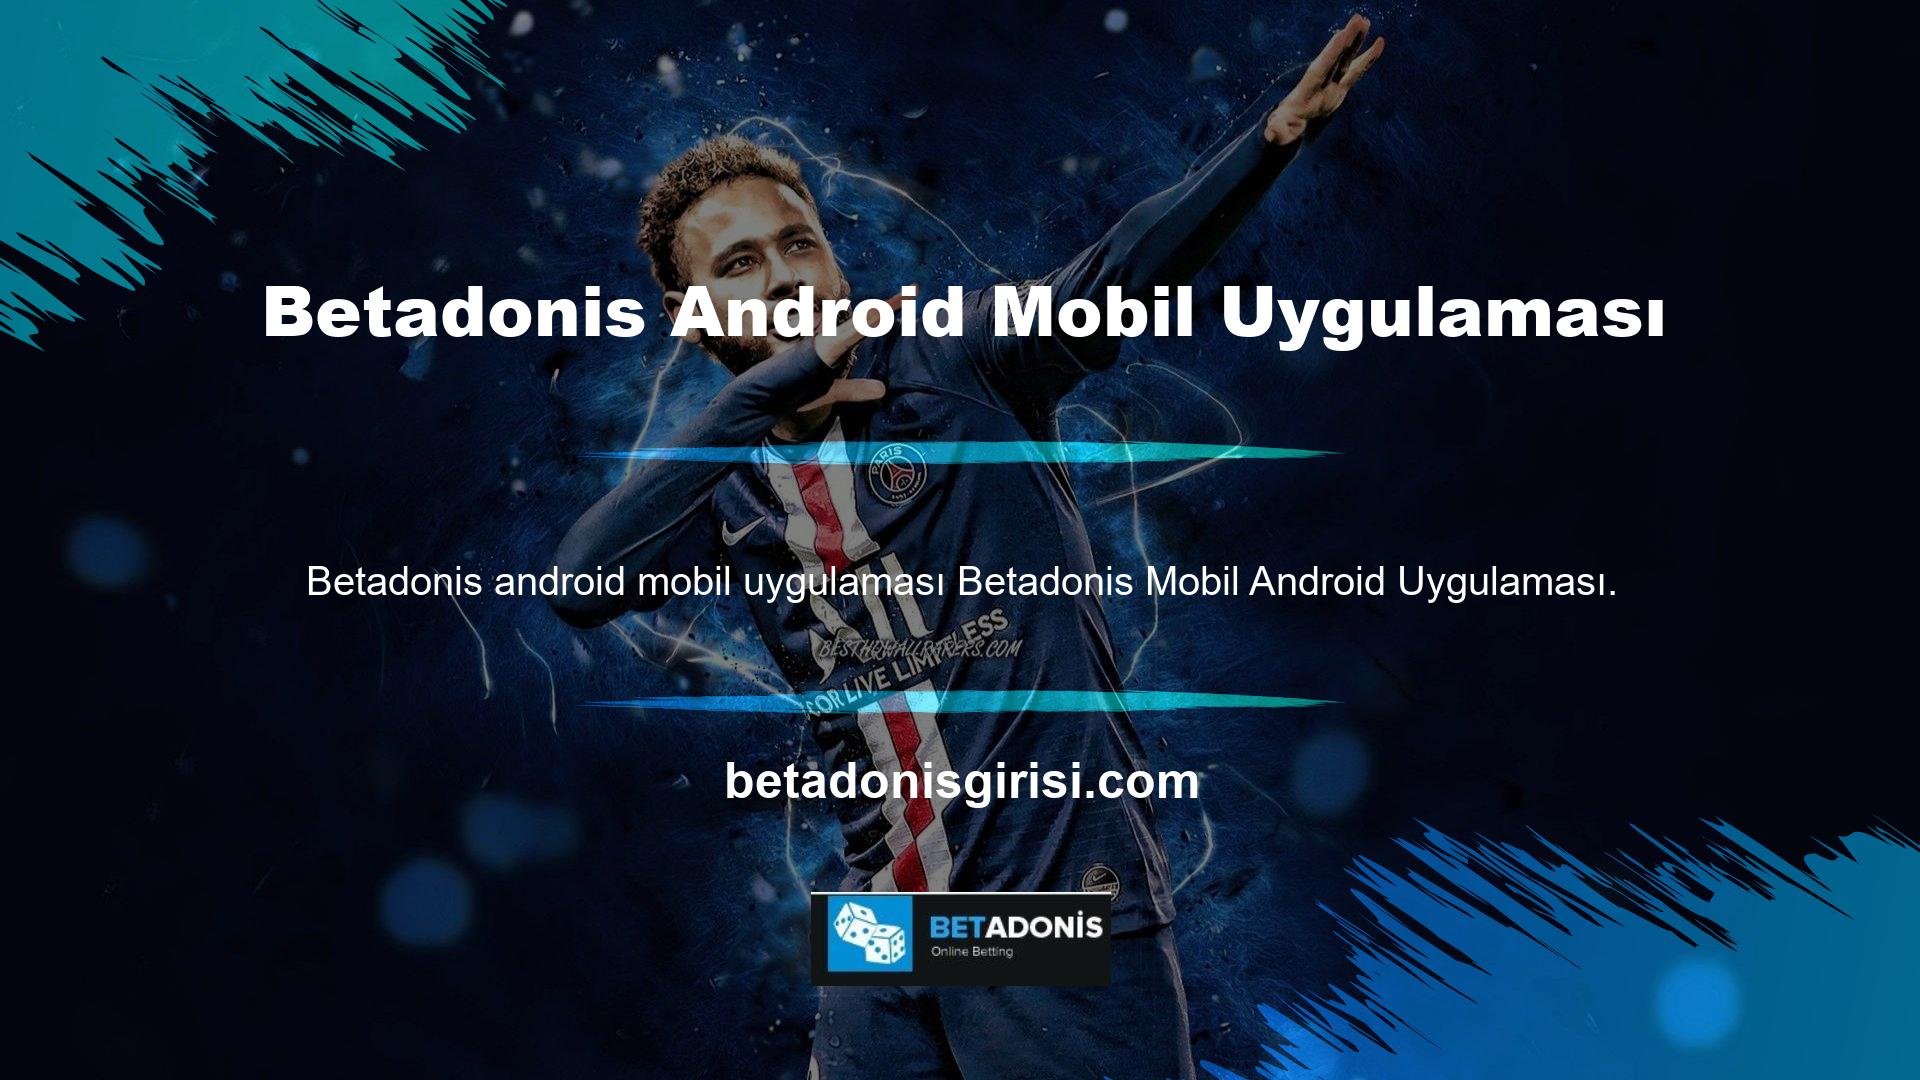 Android markette tek bir Betadonis mobil uygulaması var, o da Google Play uygulama marketi